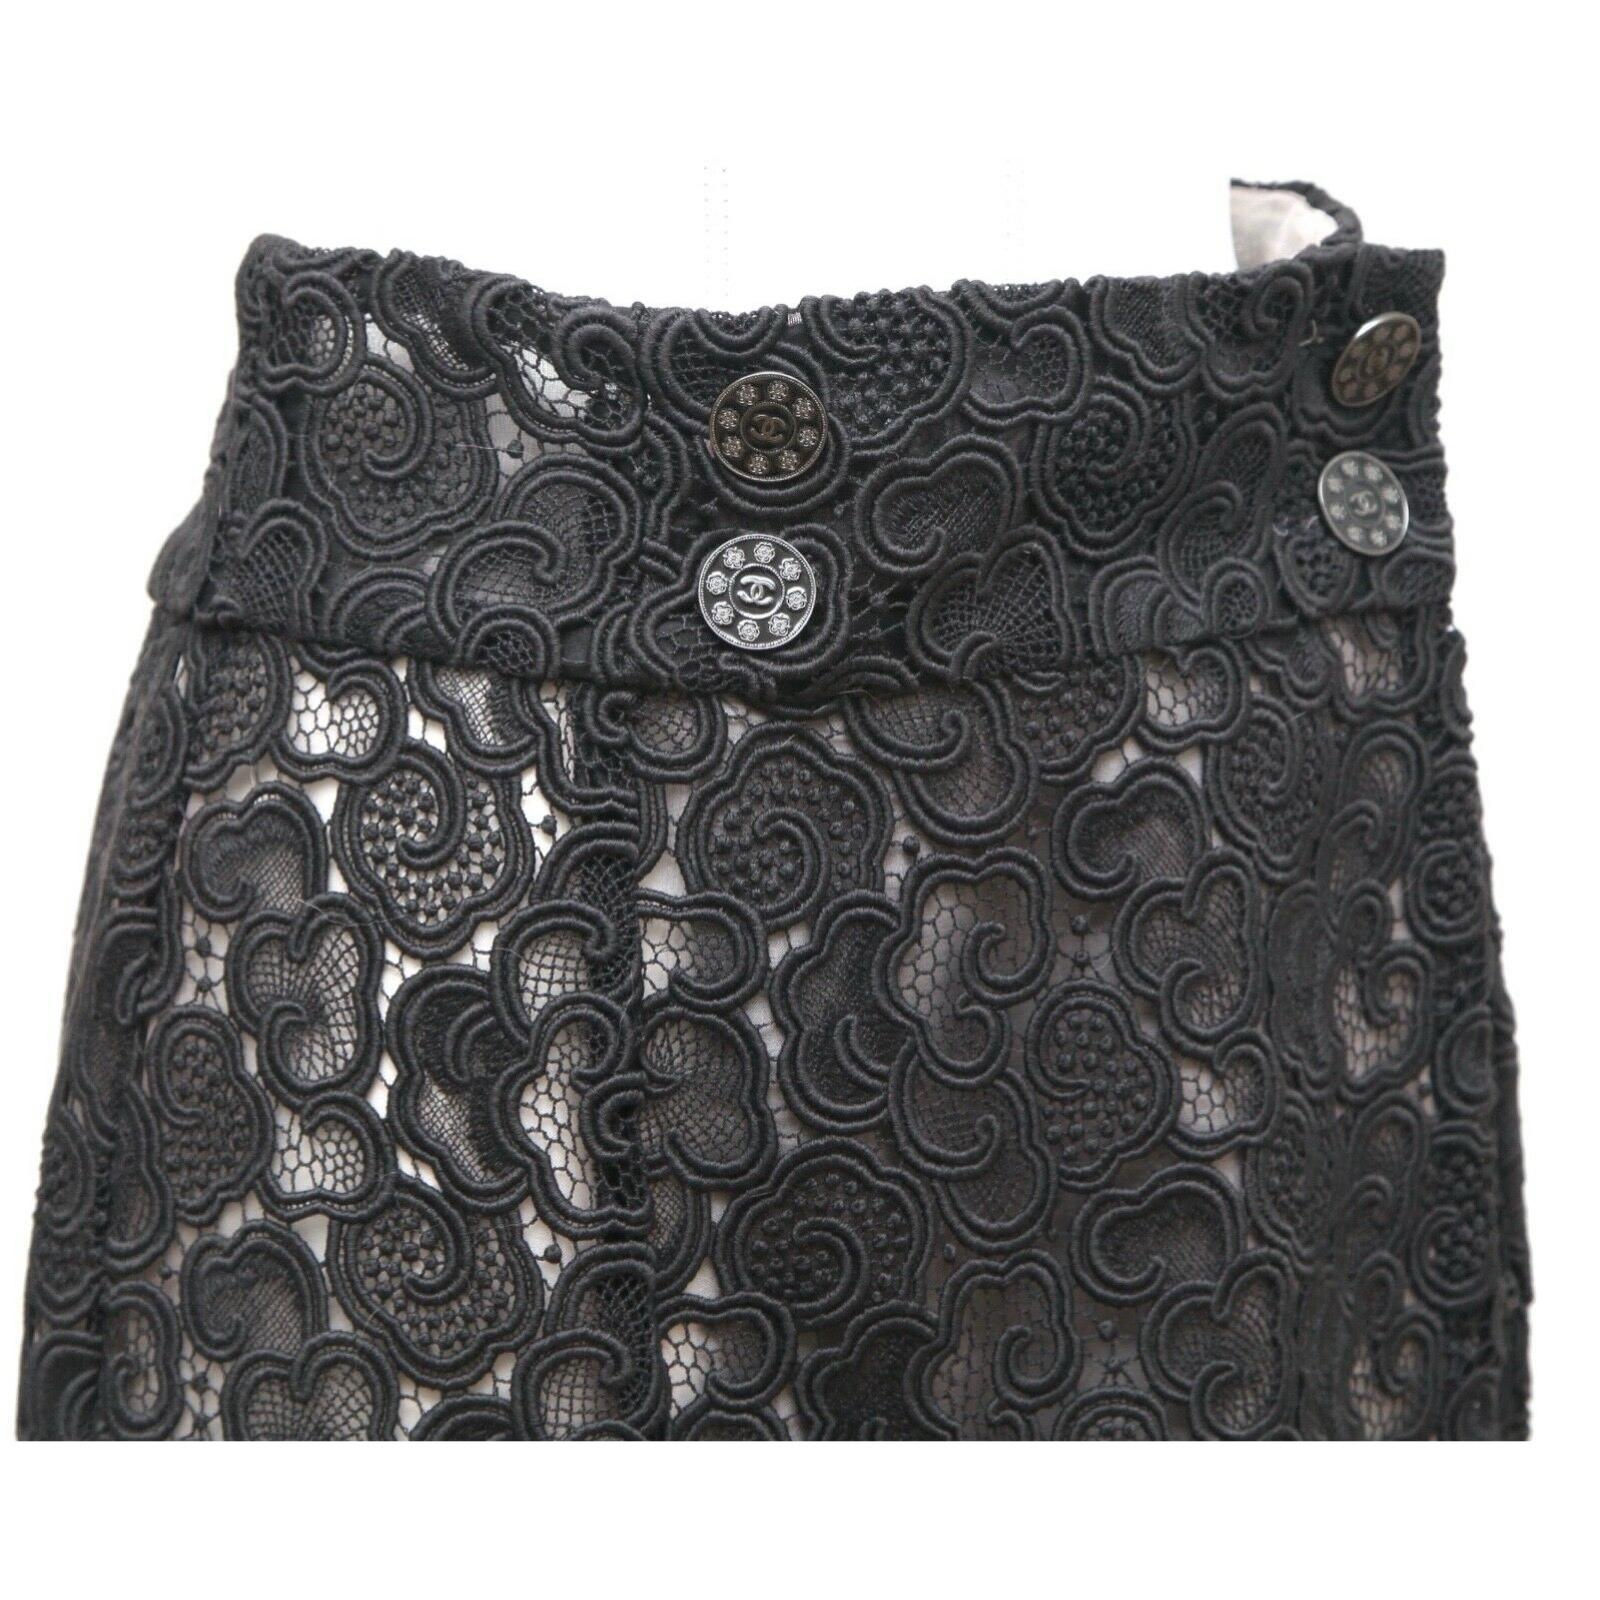 CHANEL Black Skirt Lace Cotton Faux Wrap Lined Paris Seoul 2016 Sz 38 For Sale 1